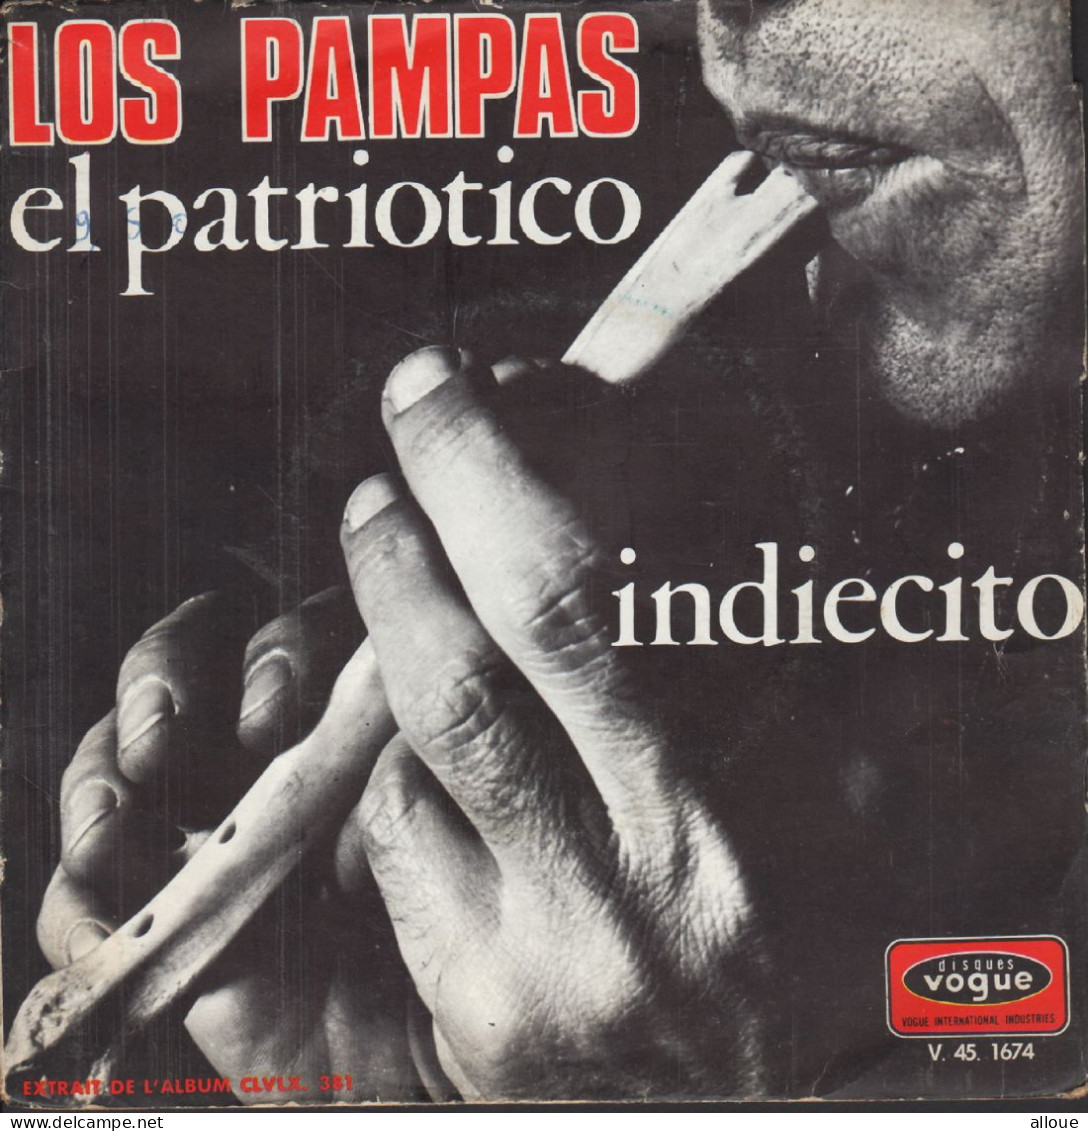 LOS PAMPAS - FR SG - EL PATRIOTICO + 1 - World Music